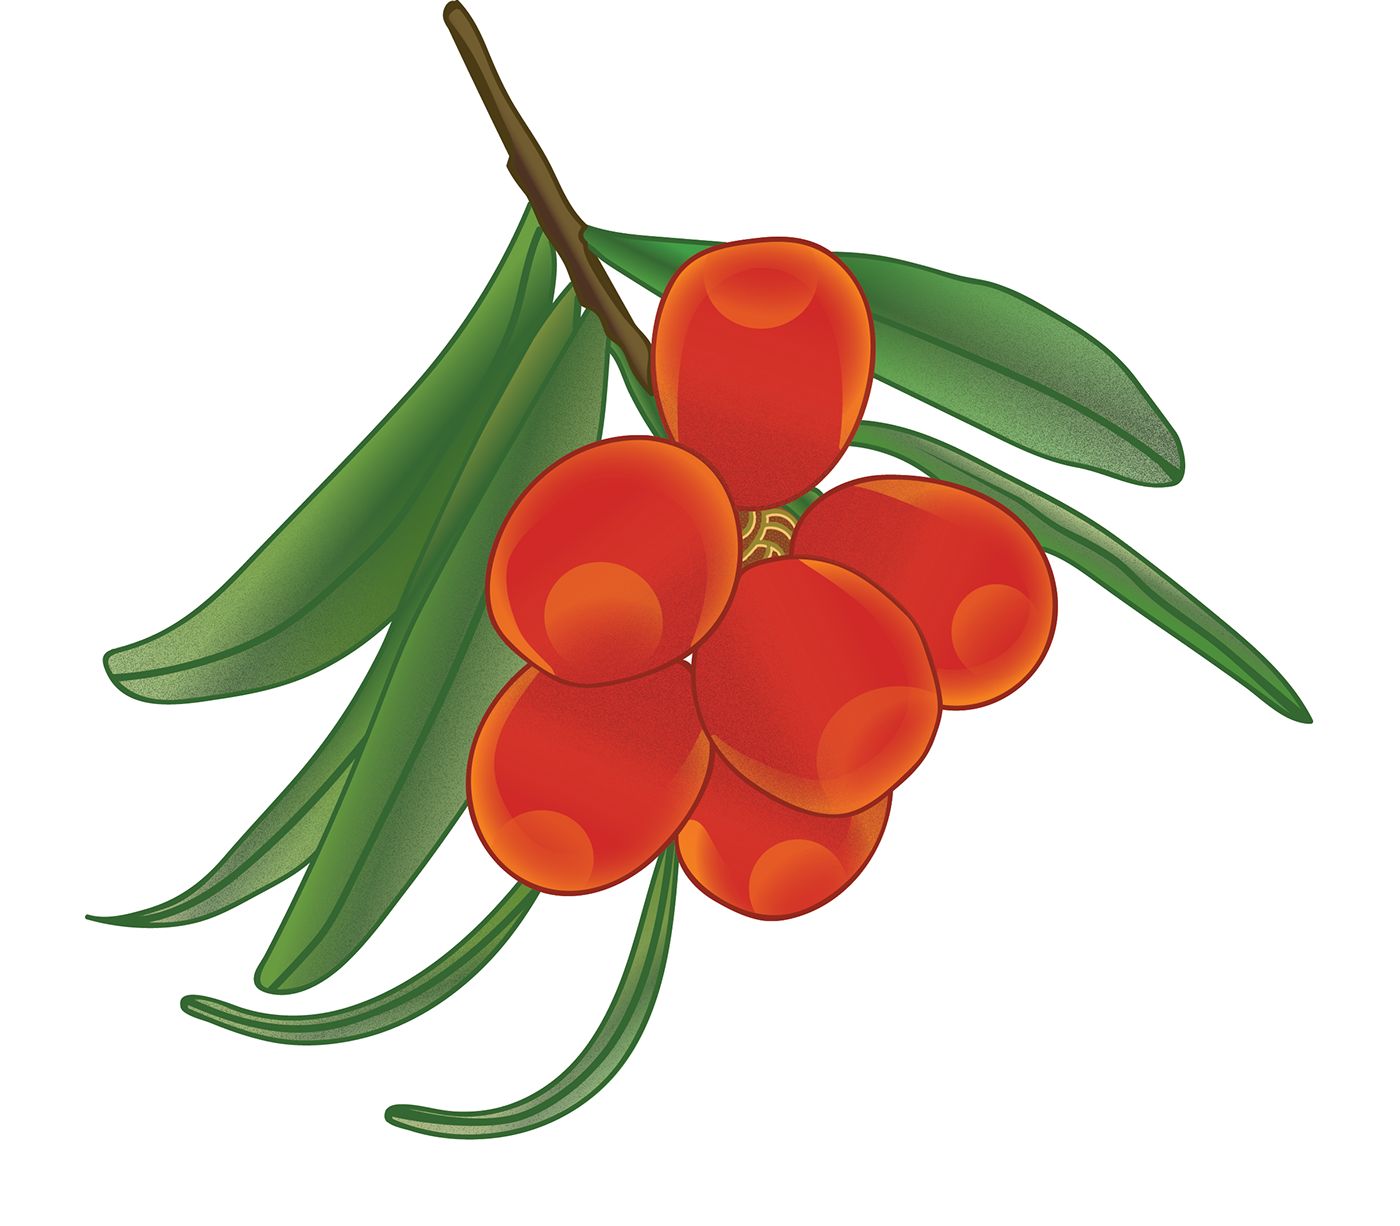 Ashberry berries orange green branch